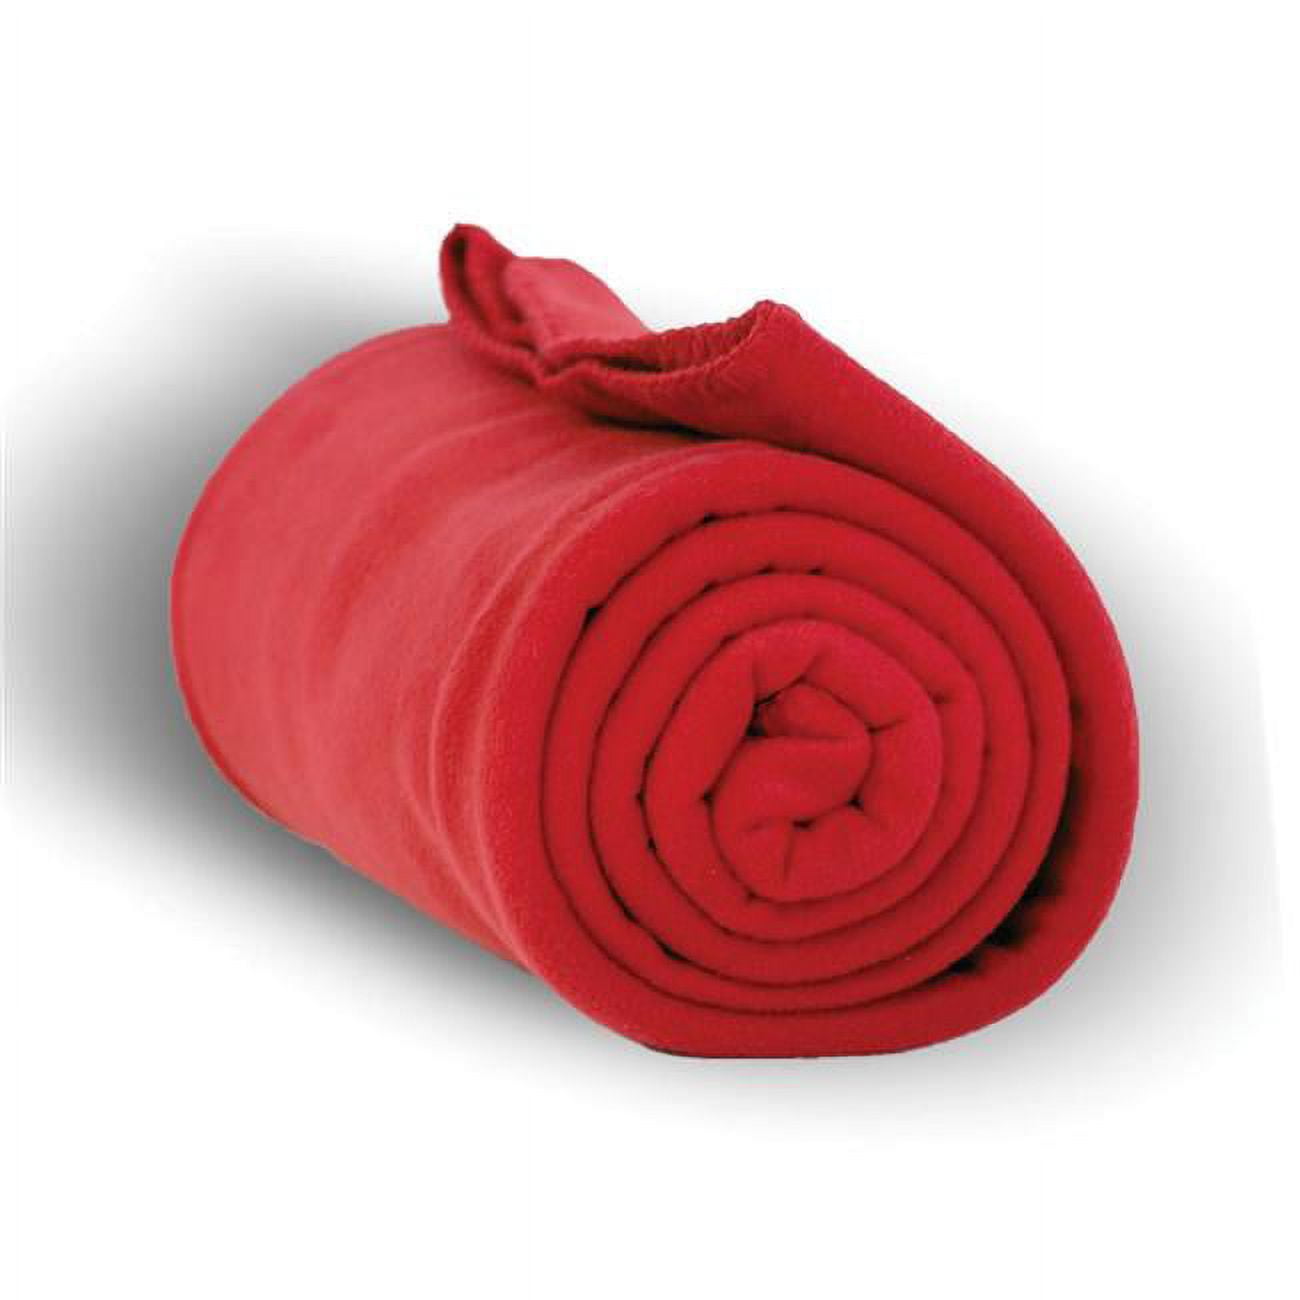 2327056 50 X 60 In. Heavy Weight Fleece Blanket Throw, Red - Case Of 24